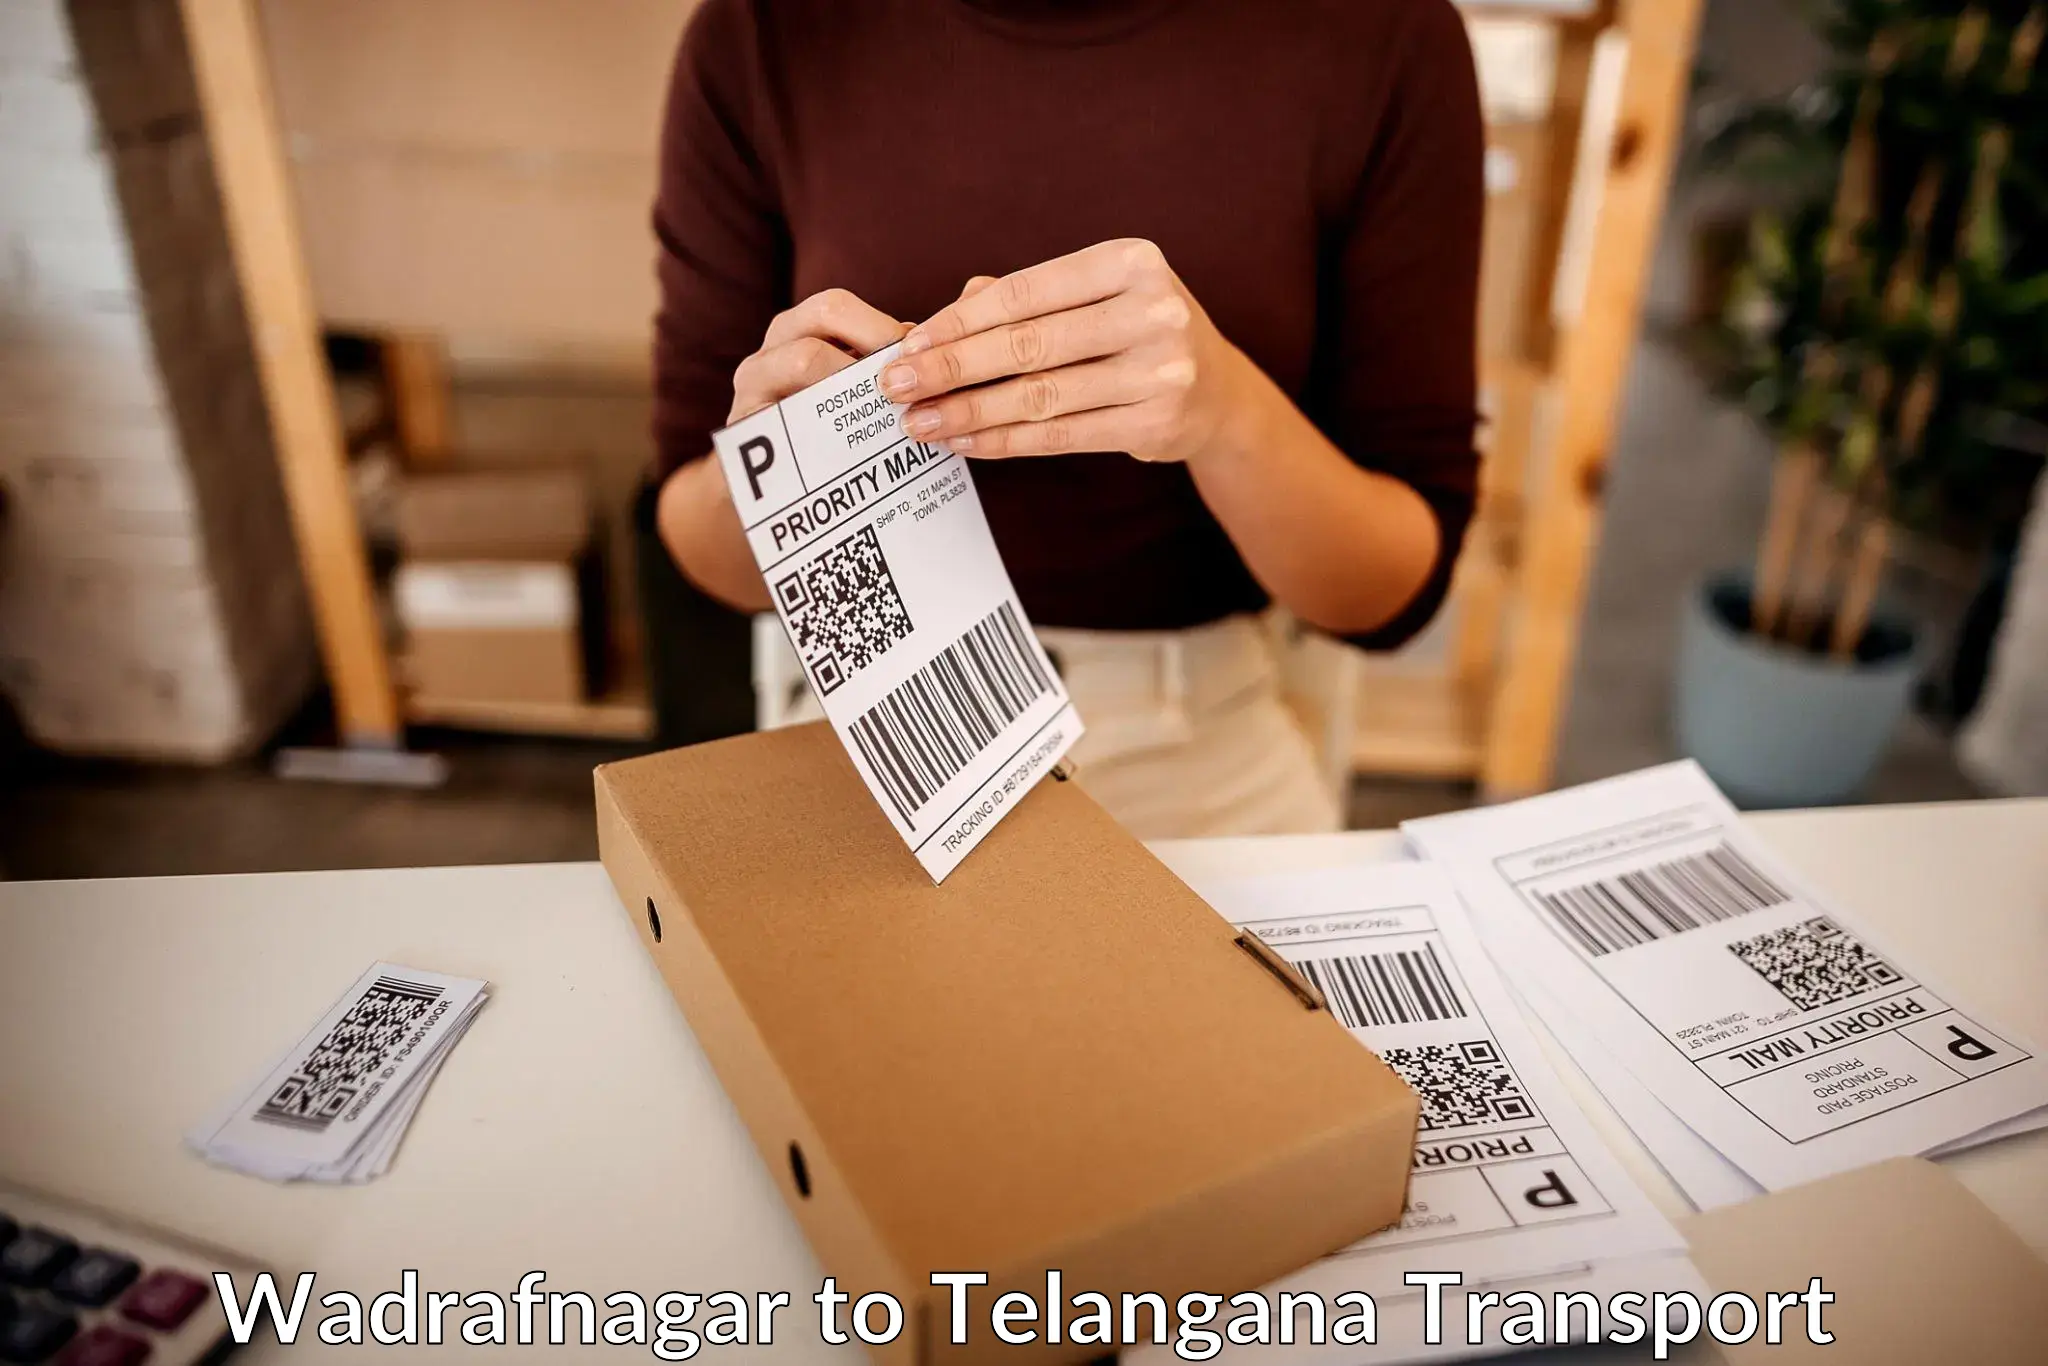 Transport in sharing Wadrafnagar to Bellampalli